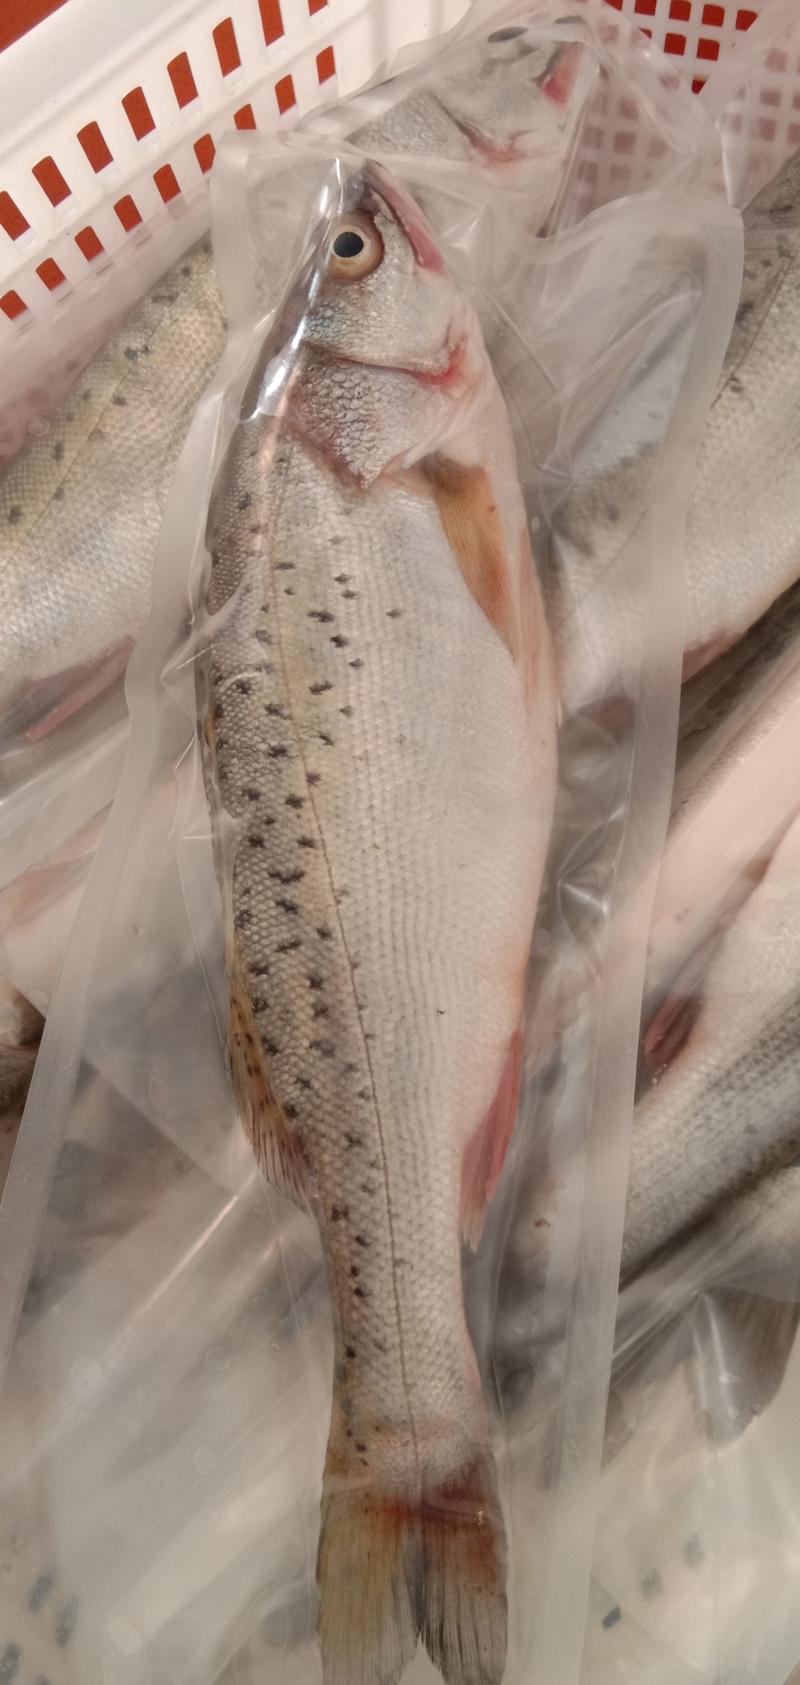 新鲜大鲈鱼花鲈鱼寨花鱼鲈板鱼海鱼海产品海鲜类水产生鲜食品